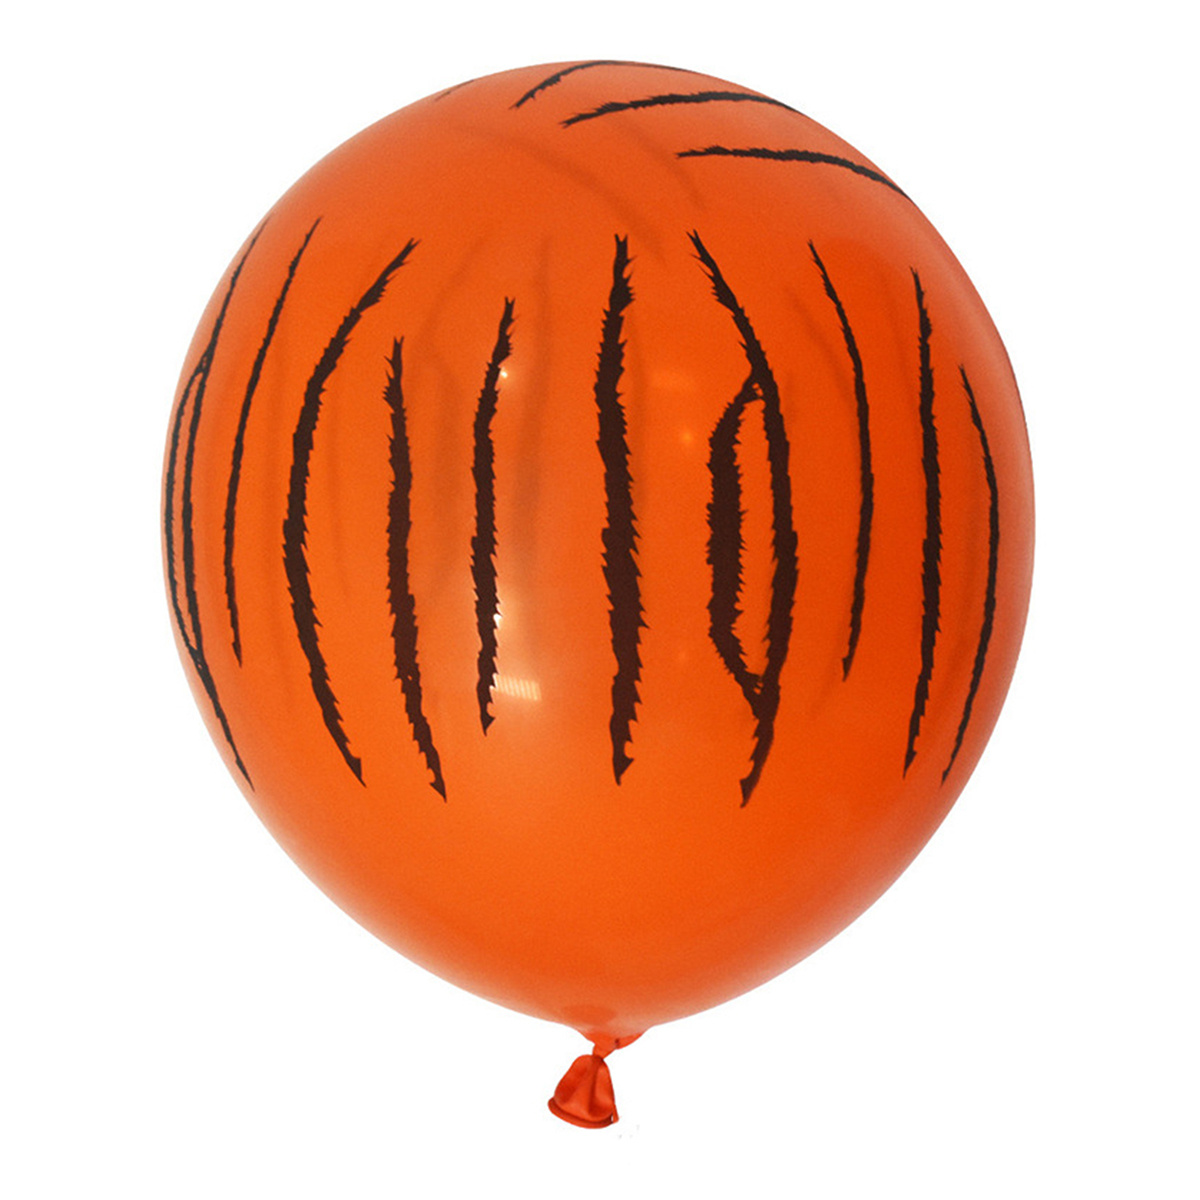 Dww-ballons Animaux De La Foret 5 Pieces Ballons Helium Gant